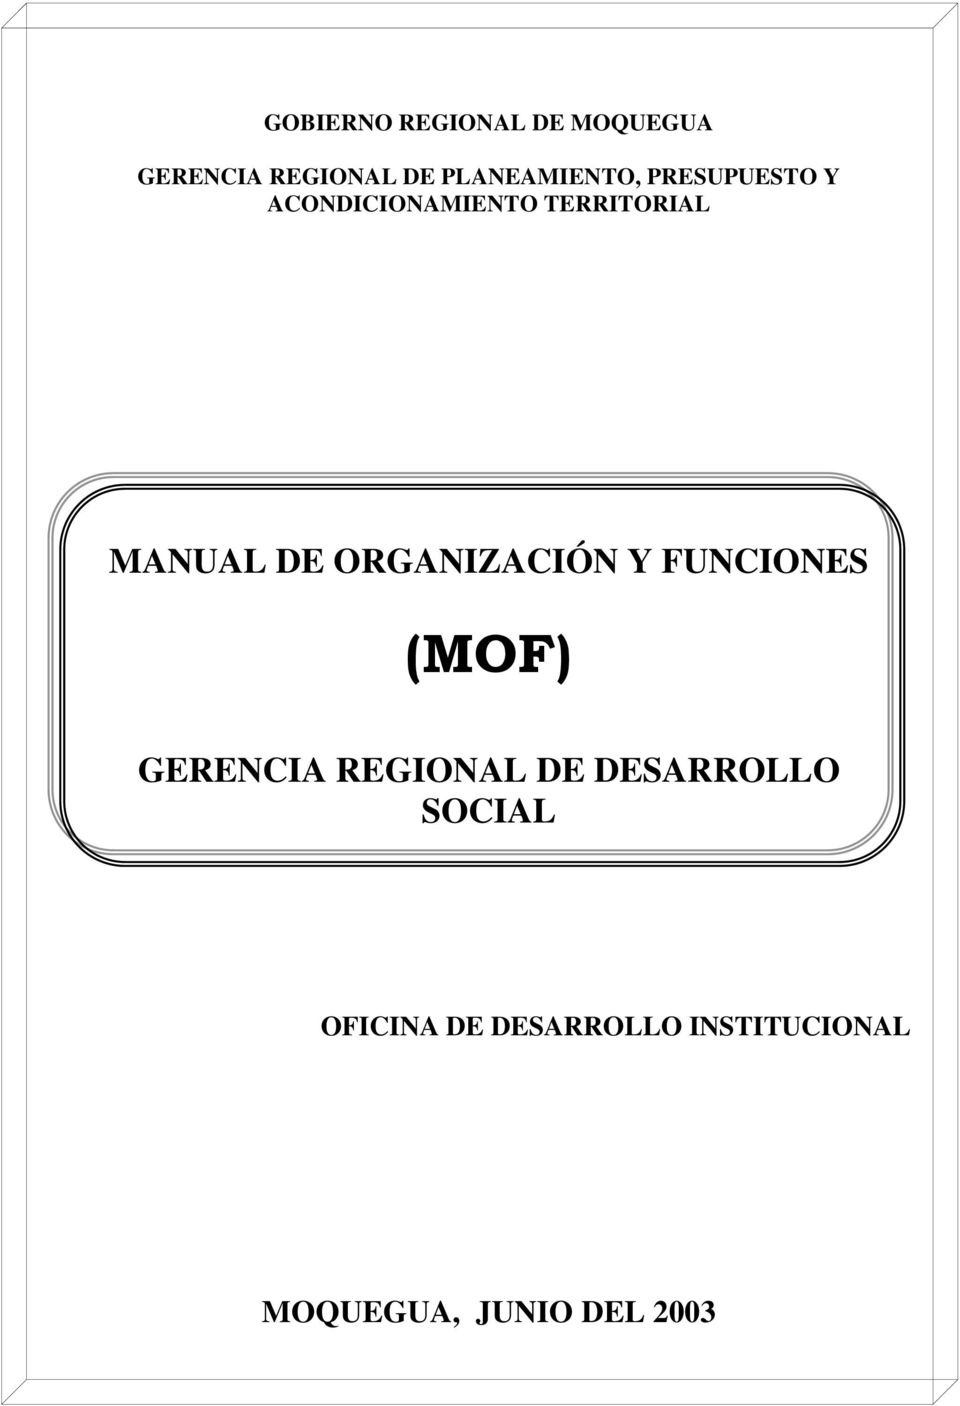 MANUAL DE ORGANIZACIÓN Y FUNCIONES (MOF) GERENCIA REGIONAL DE